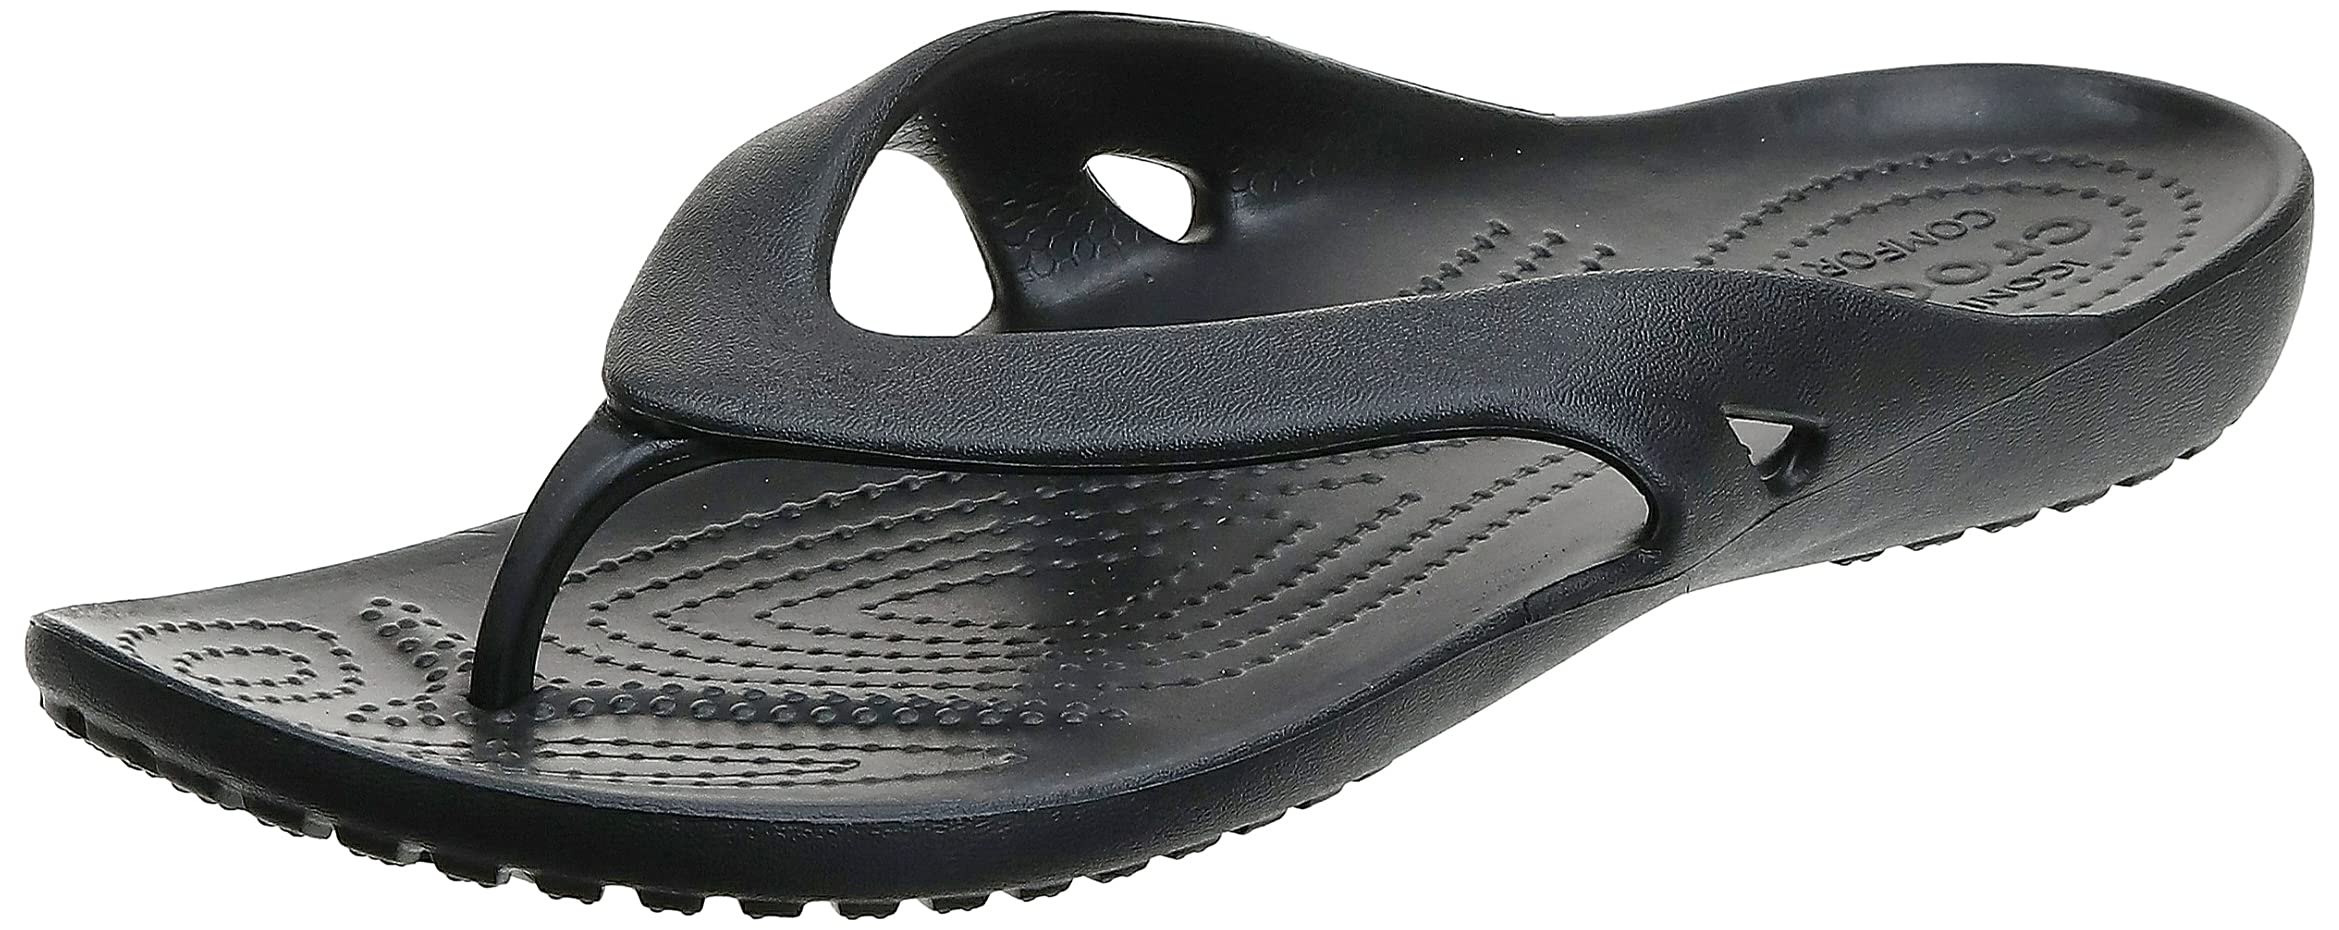 Crocs Women's Kadie II Flip Flops - $13.49 - Amazon